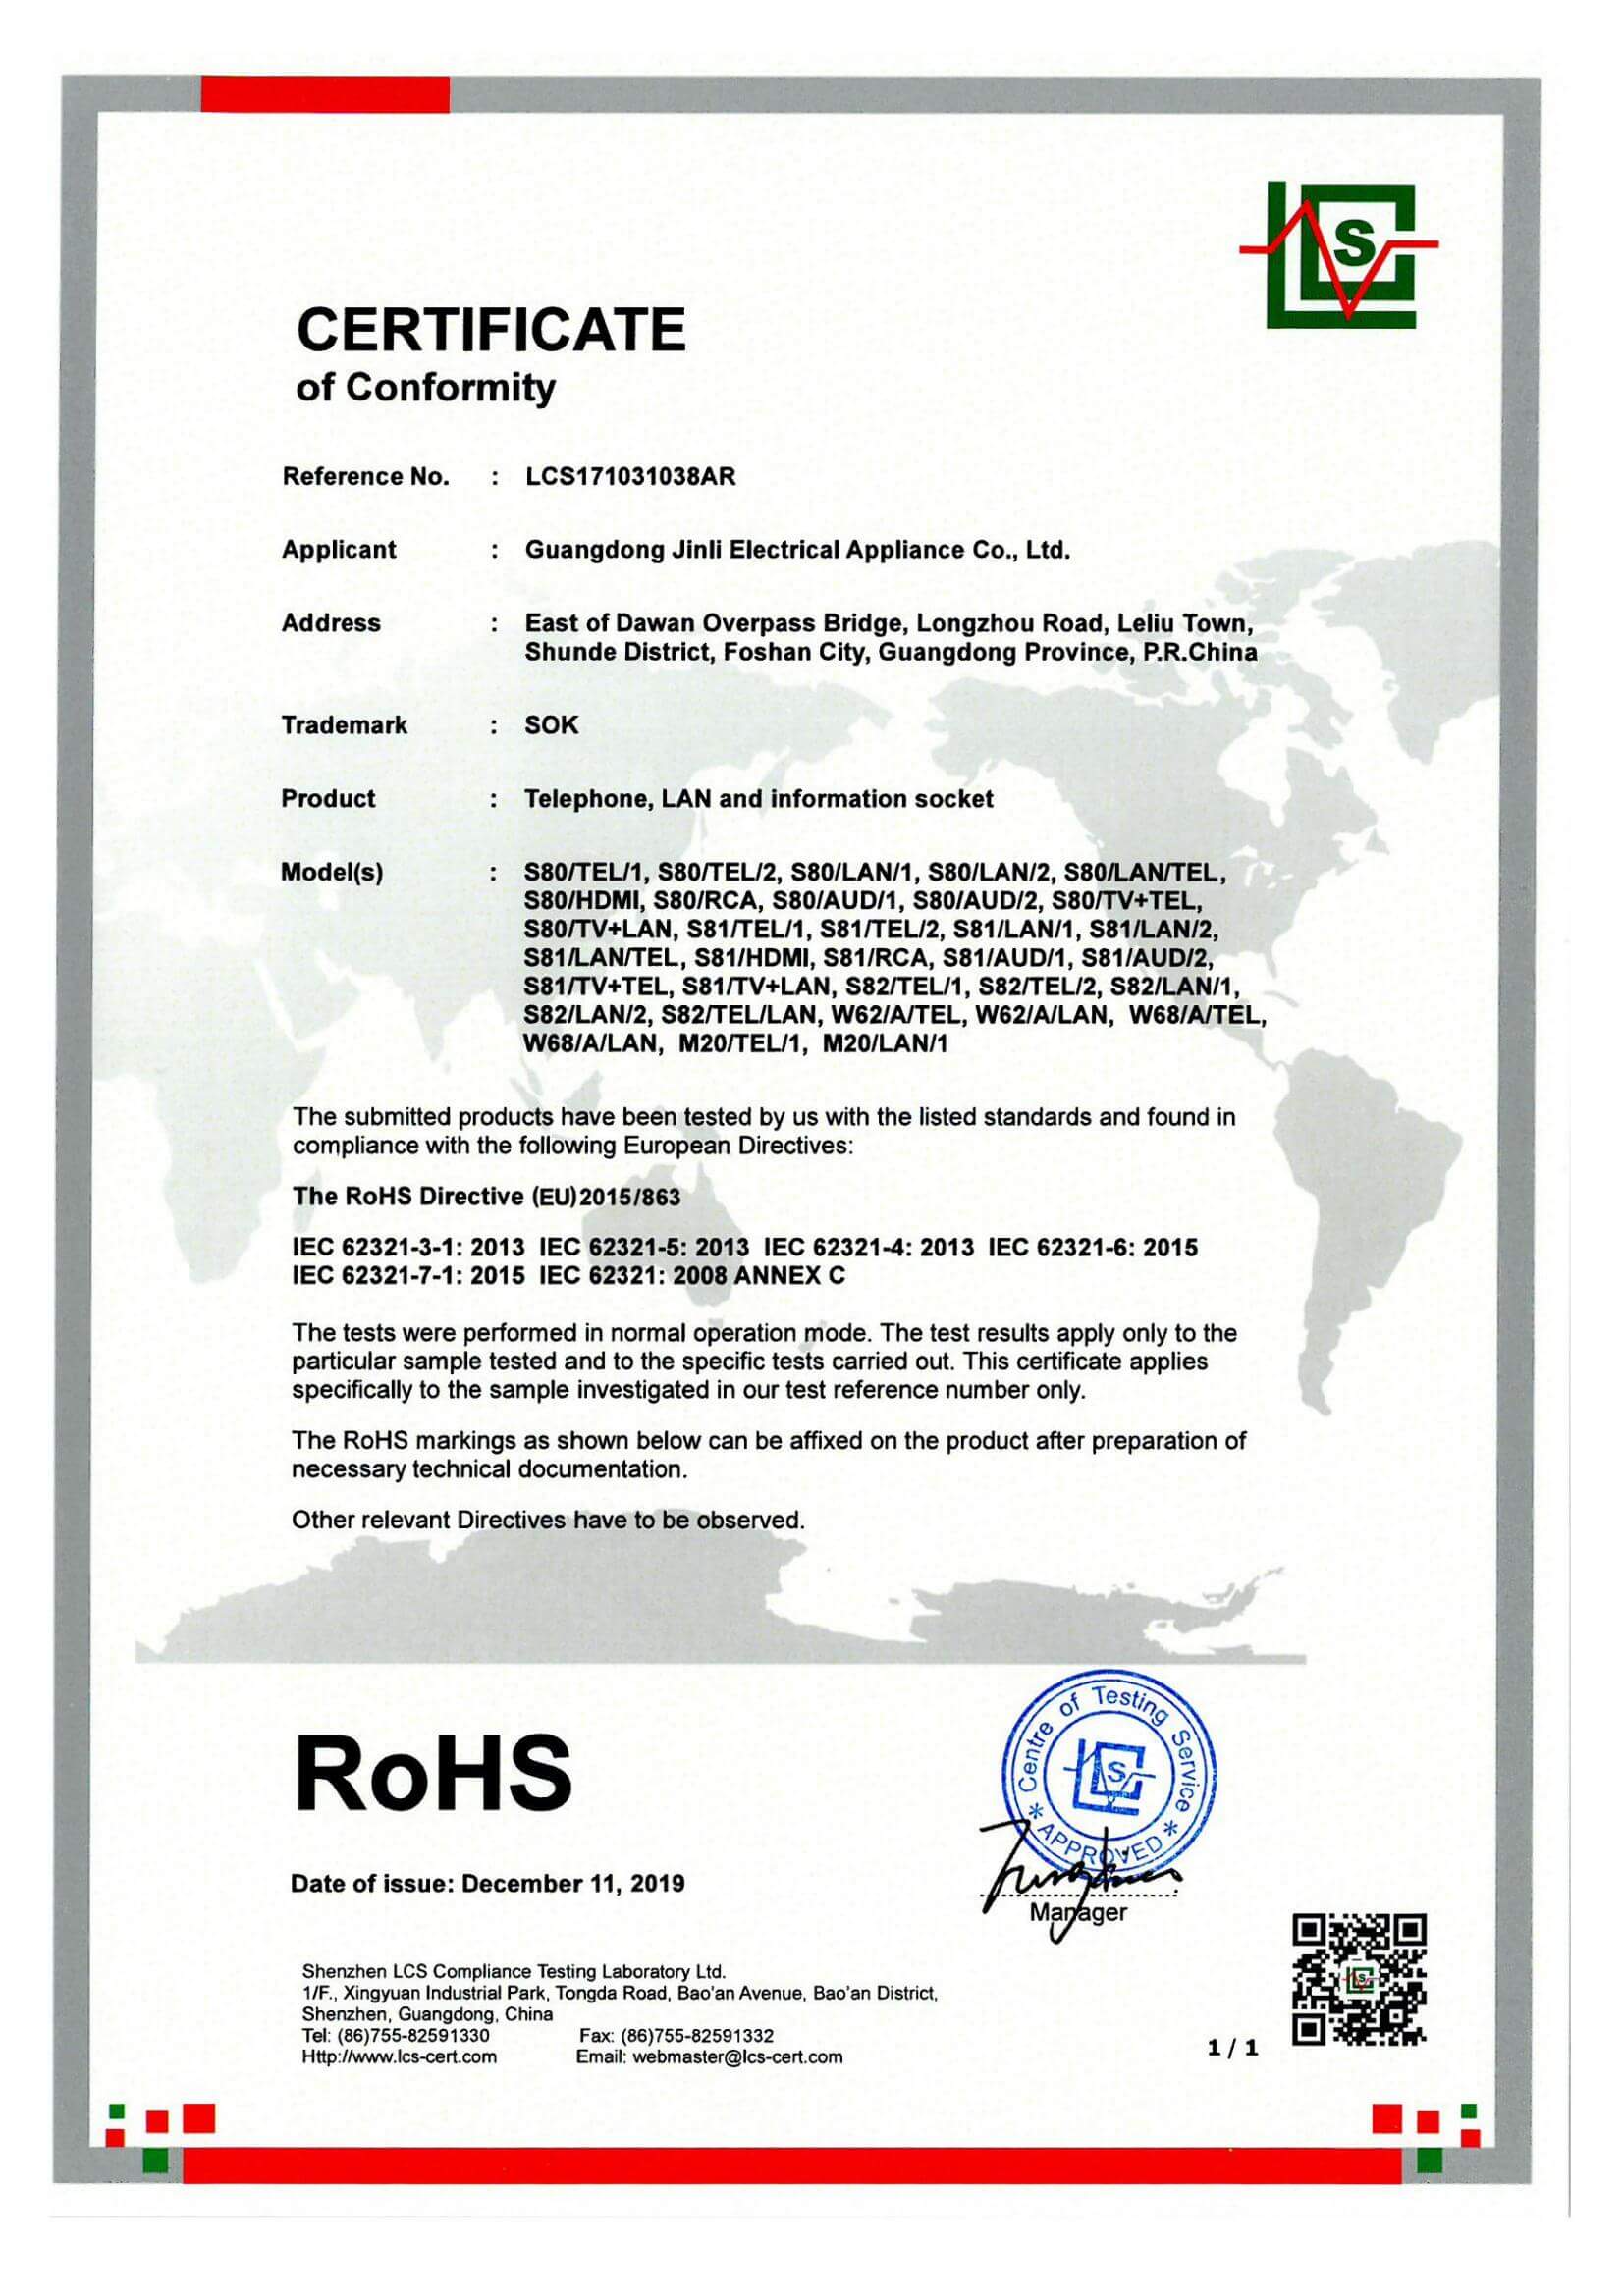 ROHS certificate_00